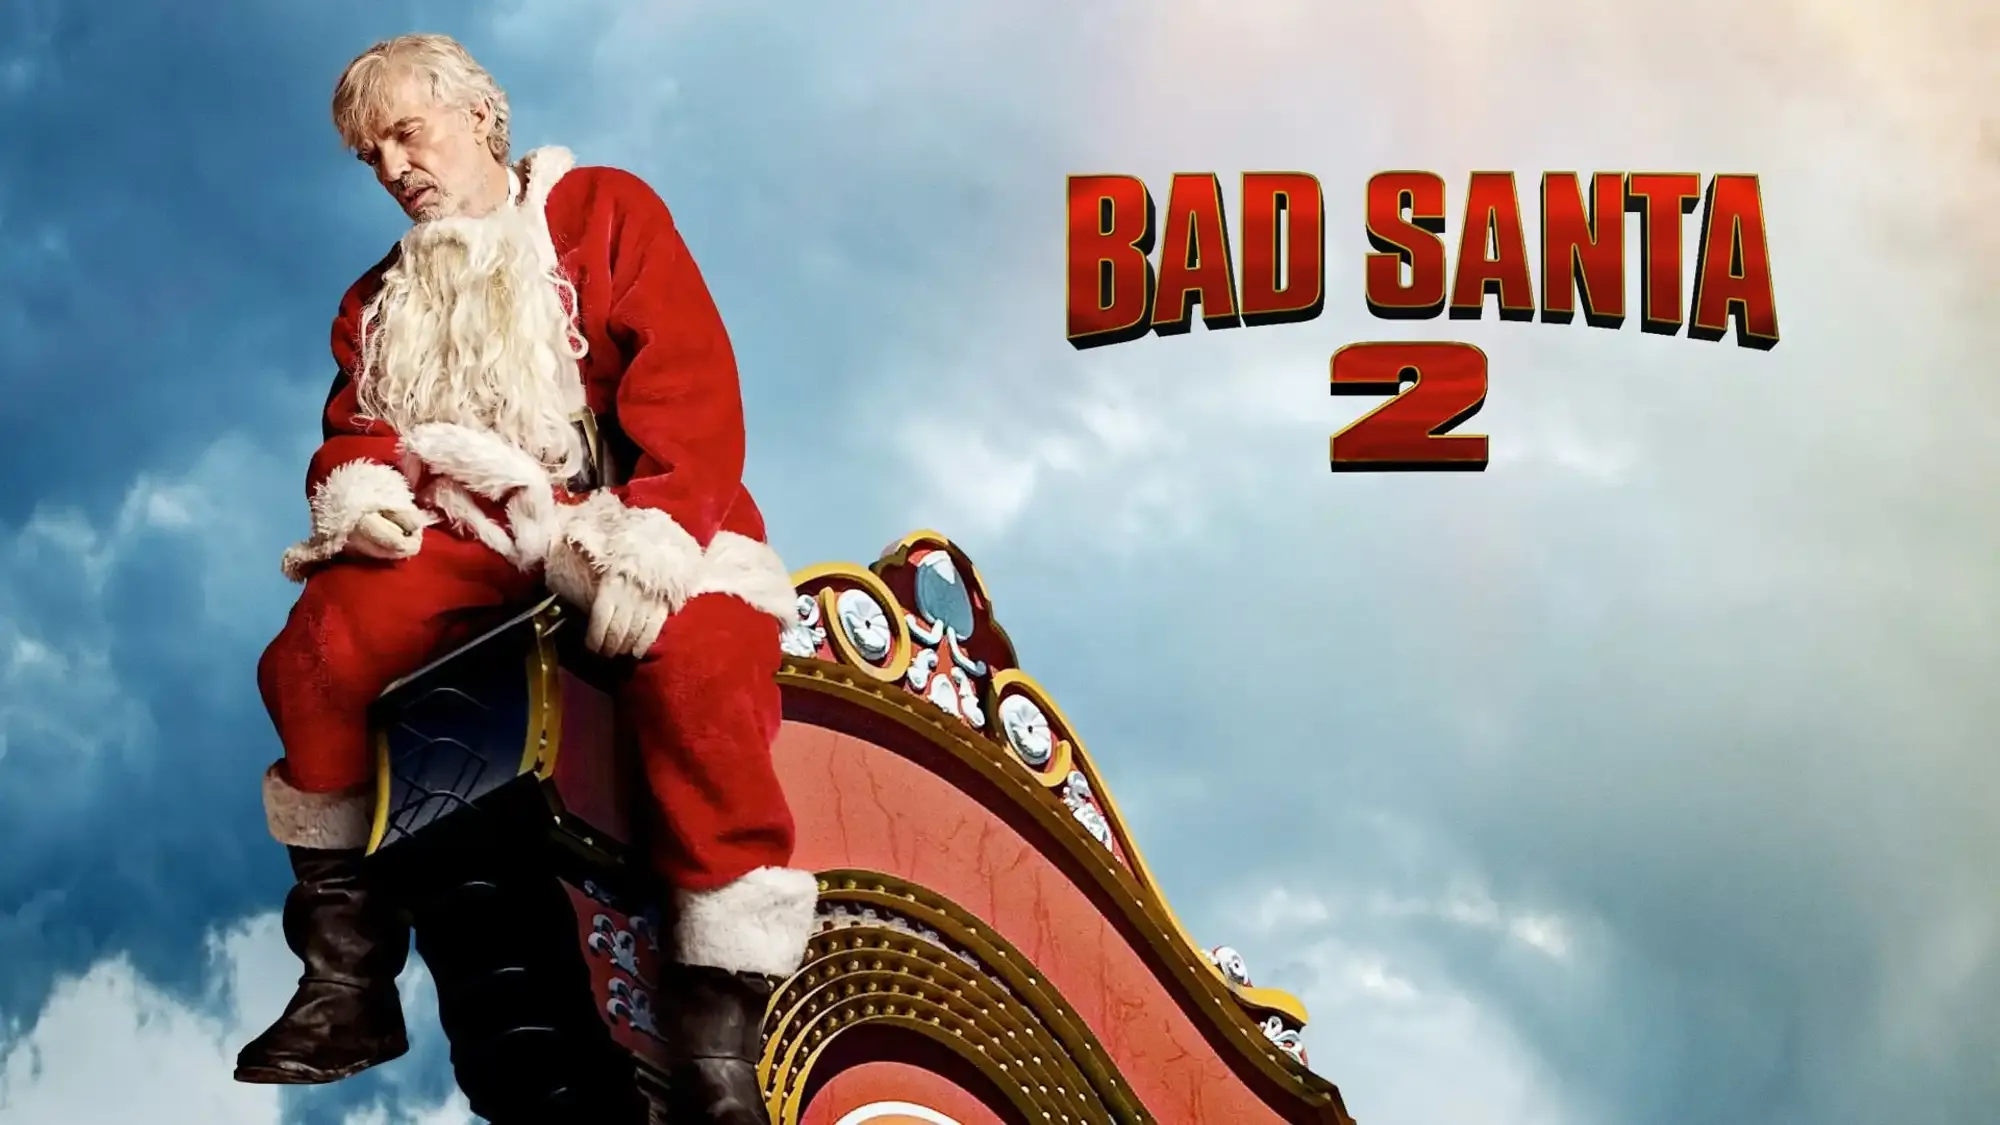 Bad Santa 2 movie review